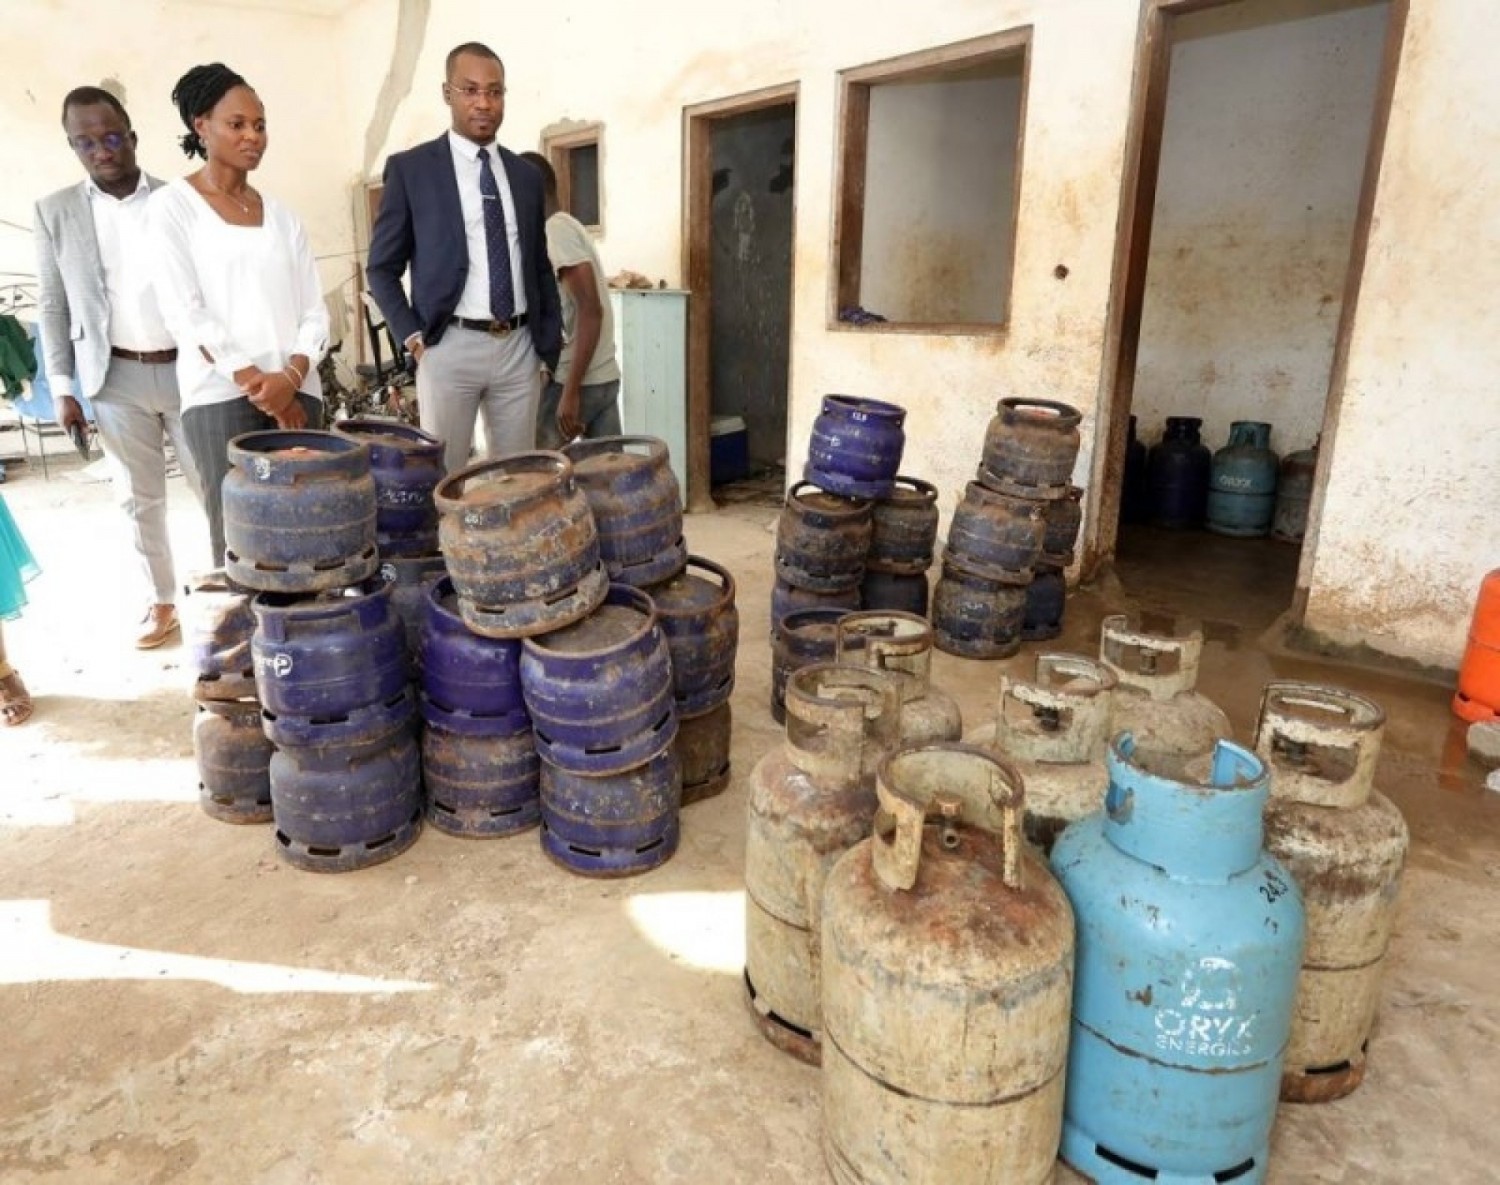 Côte d'Ivoire : Transvasement illégal du gaz dans une villa inachevée à Cocody, un étudiant et son complice interpellés